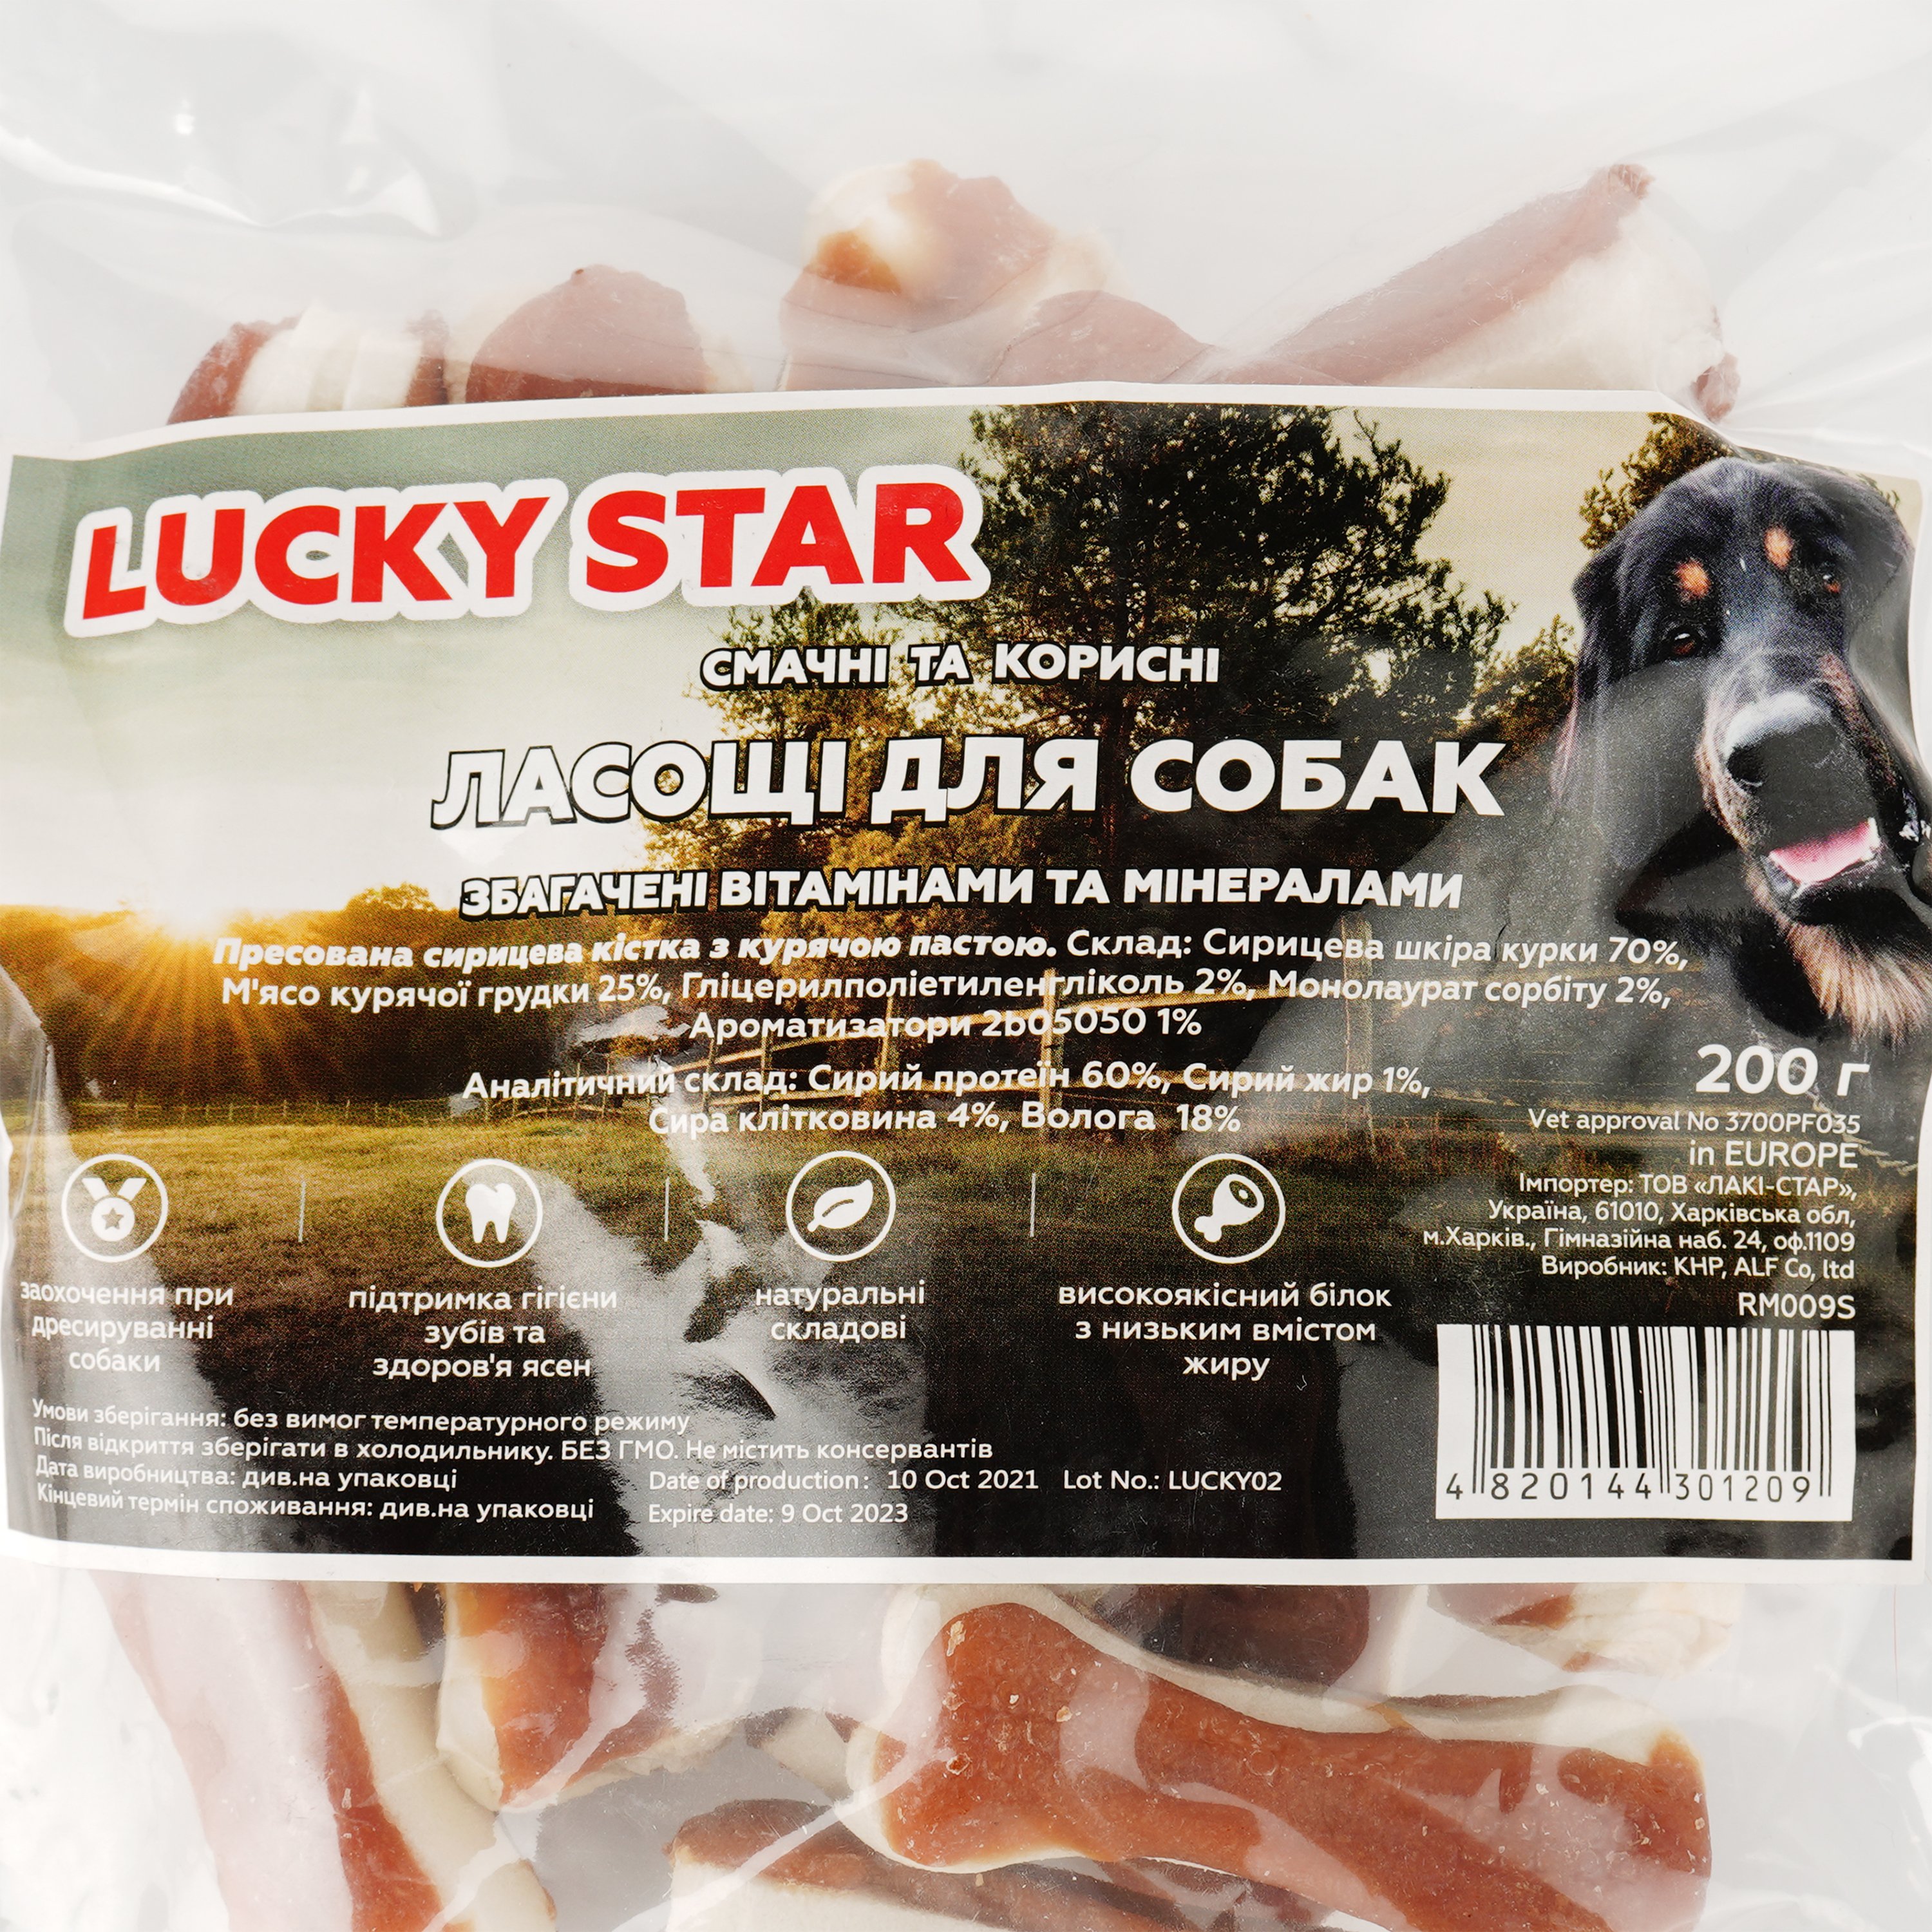 Ласощі для собак Lucky star Пресована сиром'ятна кістка з курячою пастою, 5,5 см, 200 г (RM009S) - фото 4